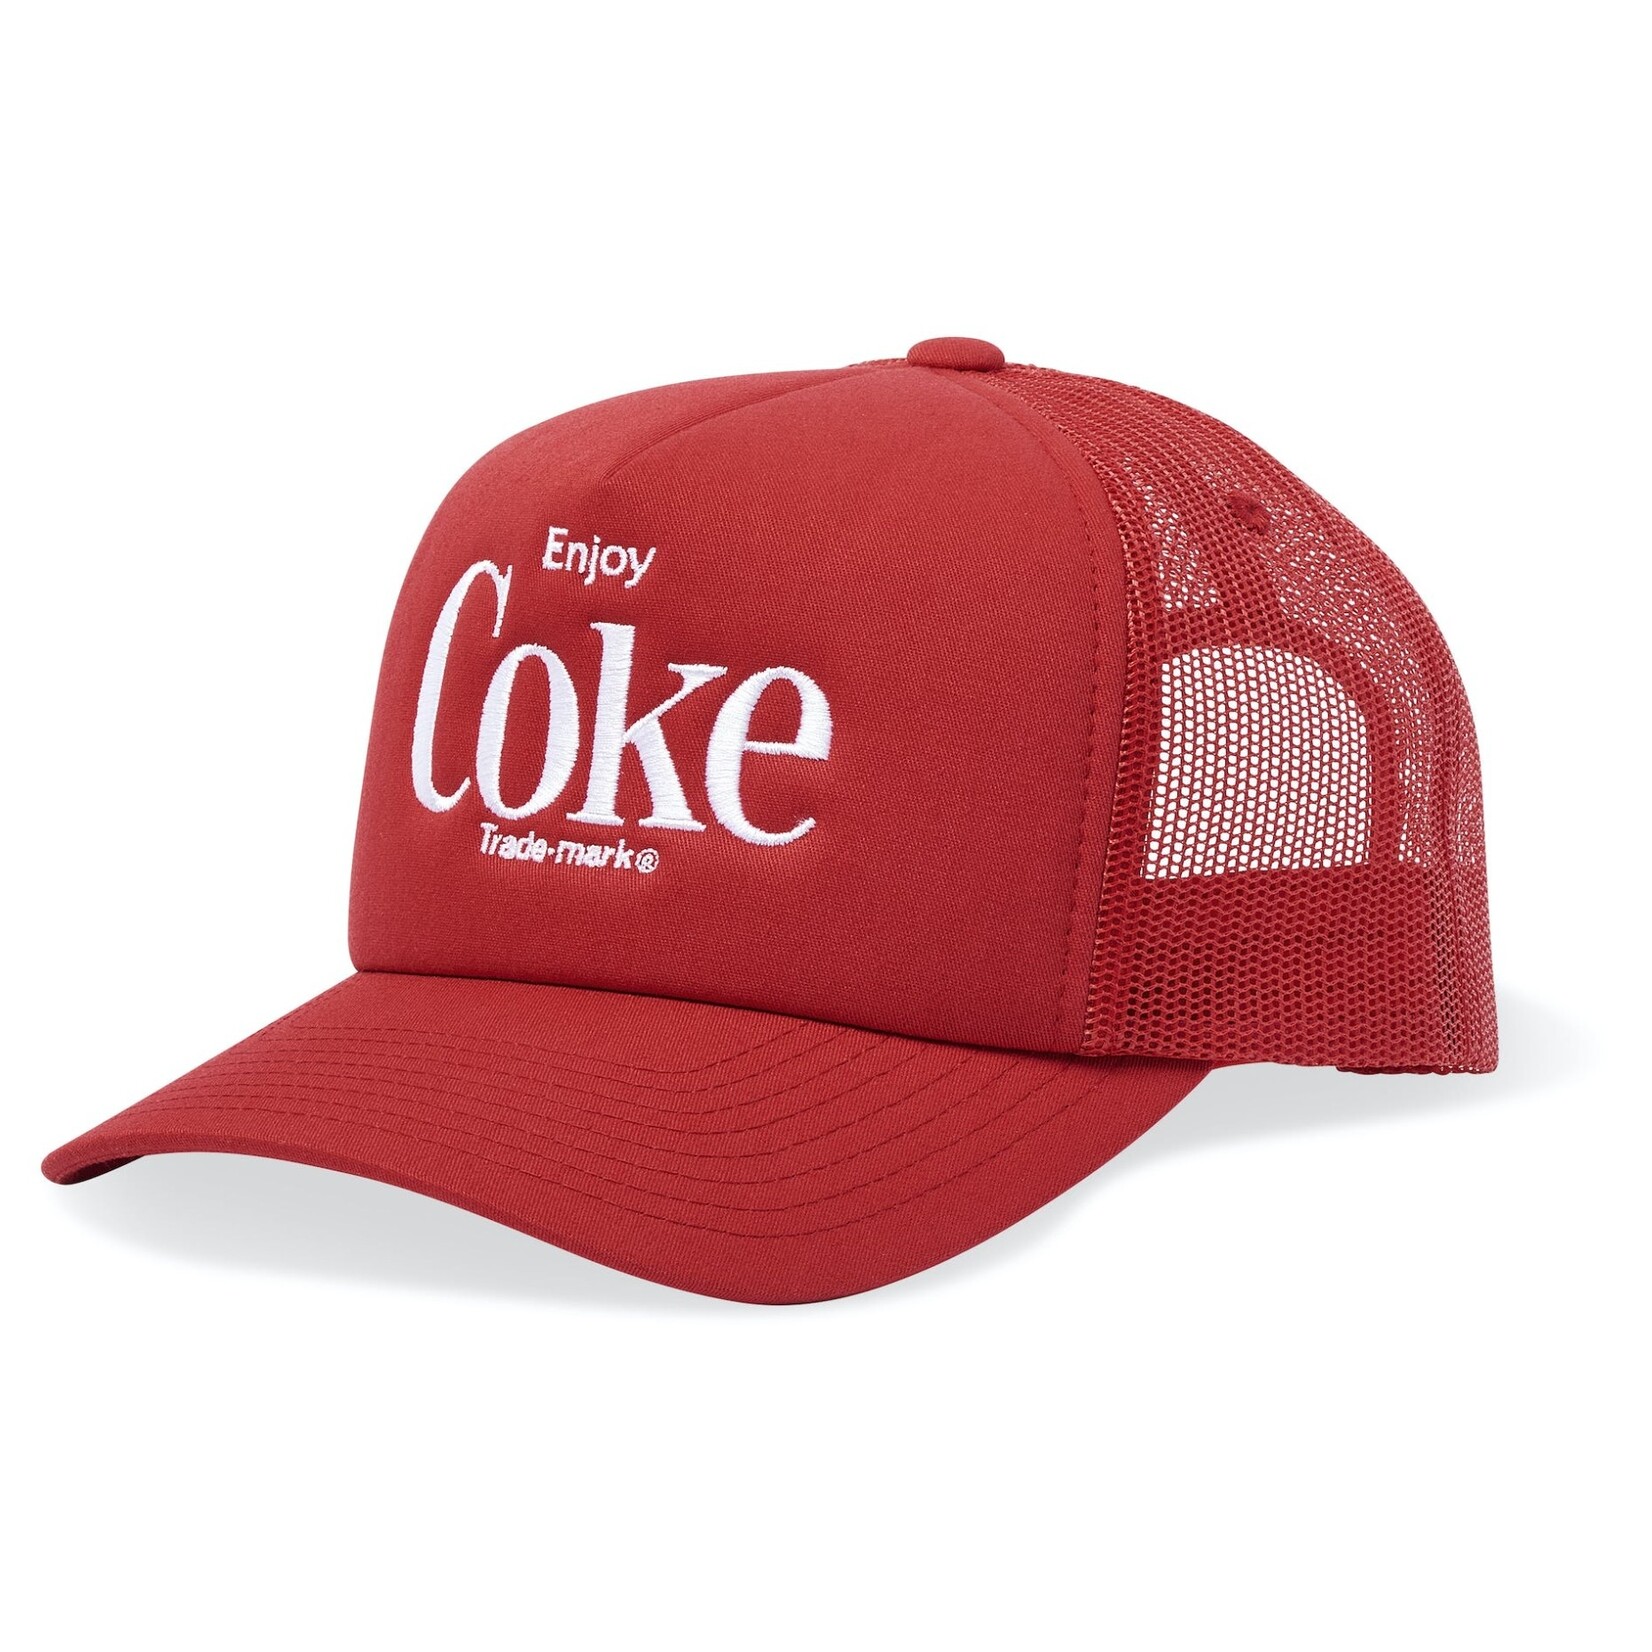 Enjoy Coca Cola Trucker Hat, Red